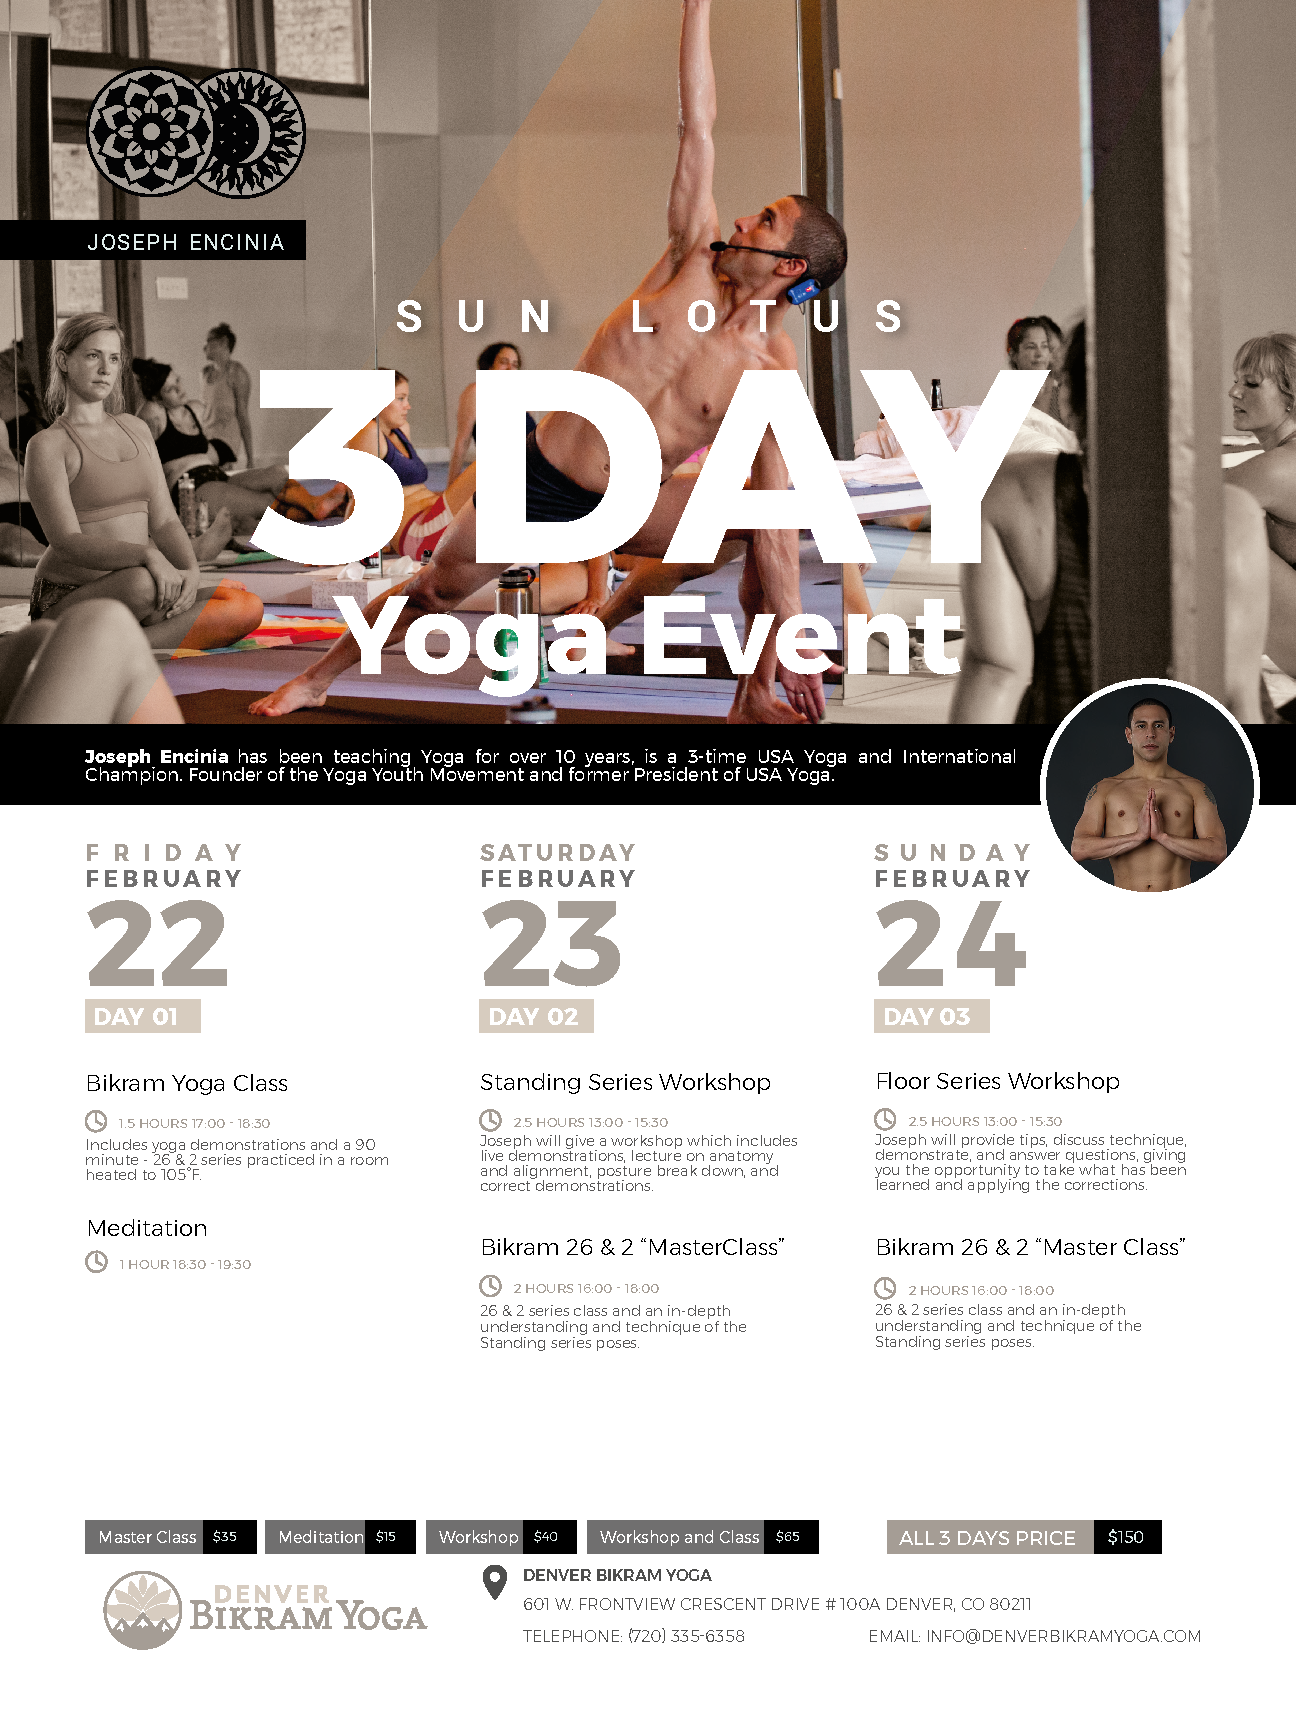 Denver, Colorado | February 22- 24, 2019 | 3 Day Yoga Event